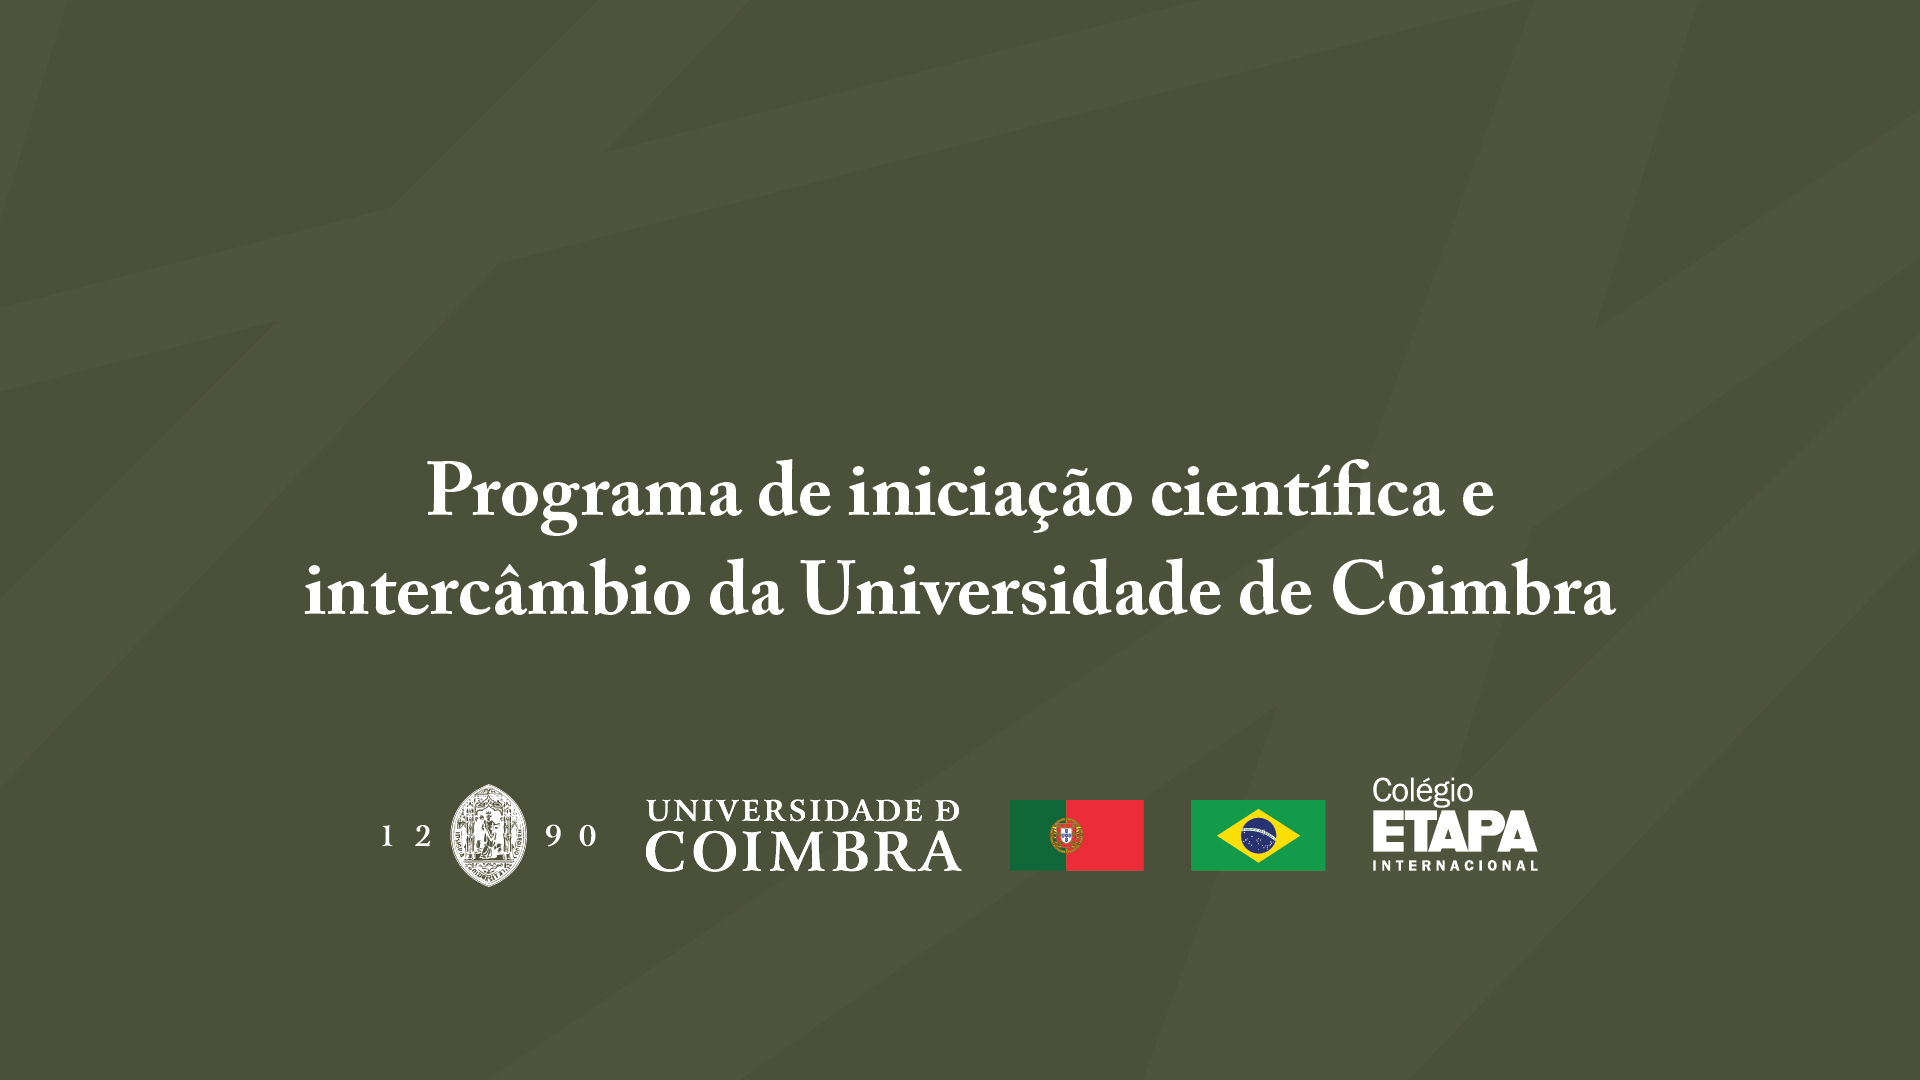 O programa de iniciação científica oferecido pelo Colégio Etapa e pela Universidade de Coimbra ocorrerá entre os meses de março e julho de 2023.